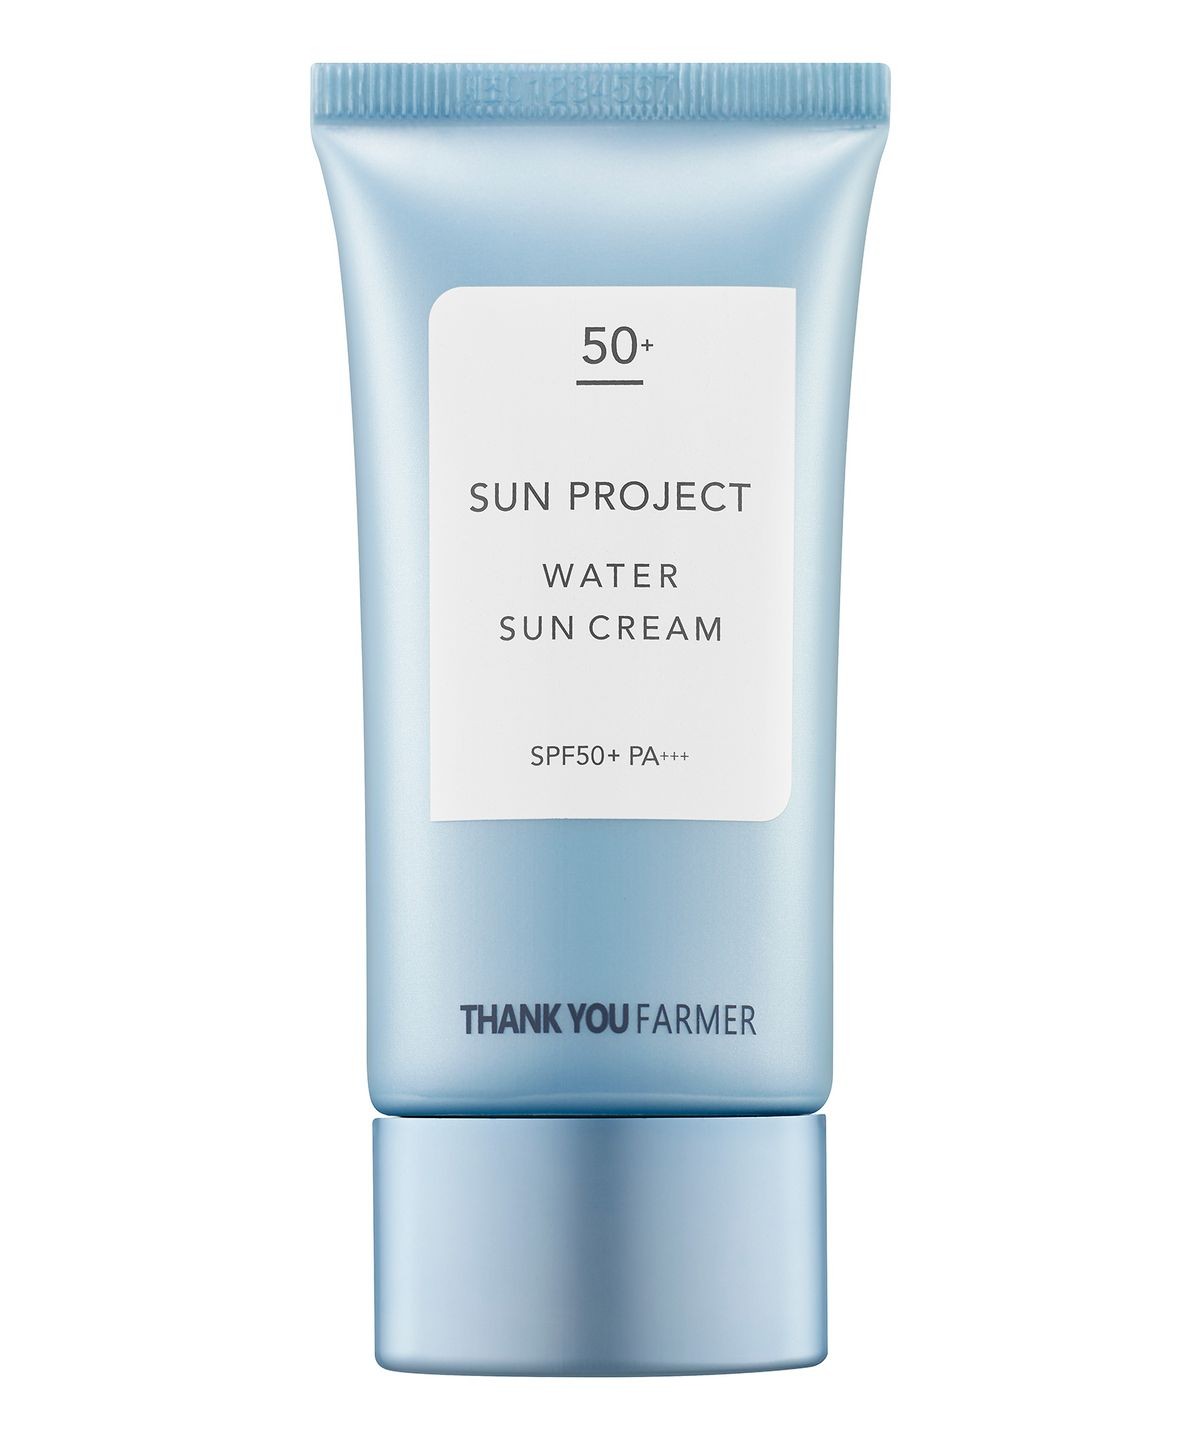 THANK YOU FARMER Sun project water sun cream SPF50